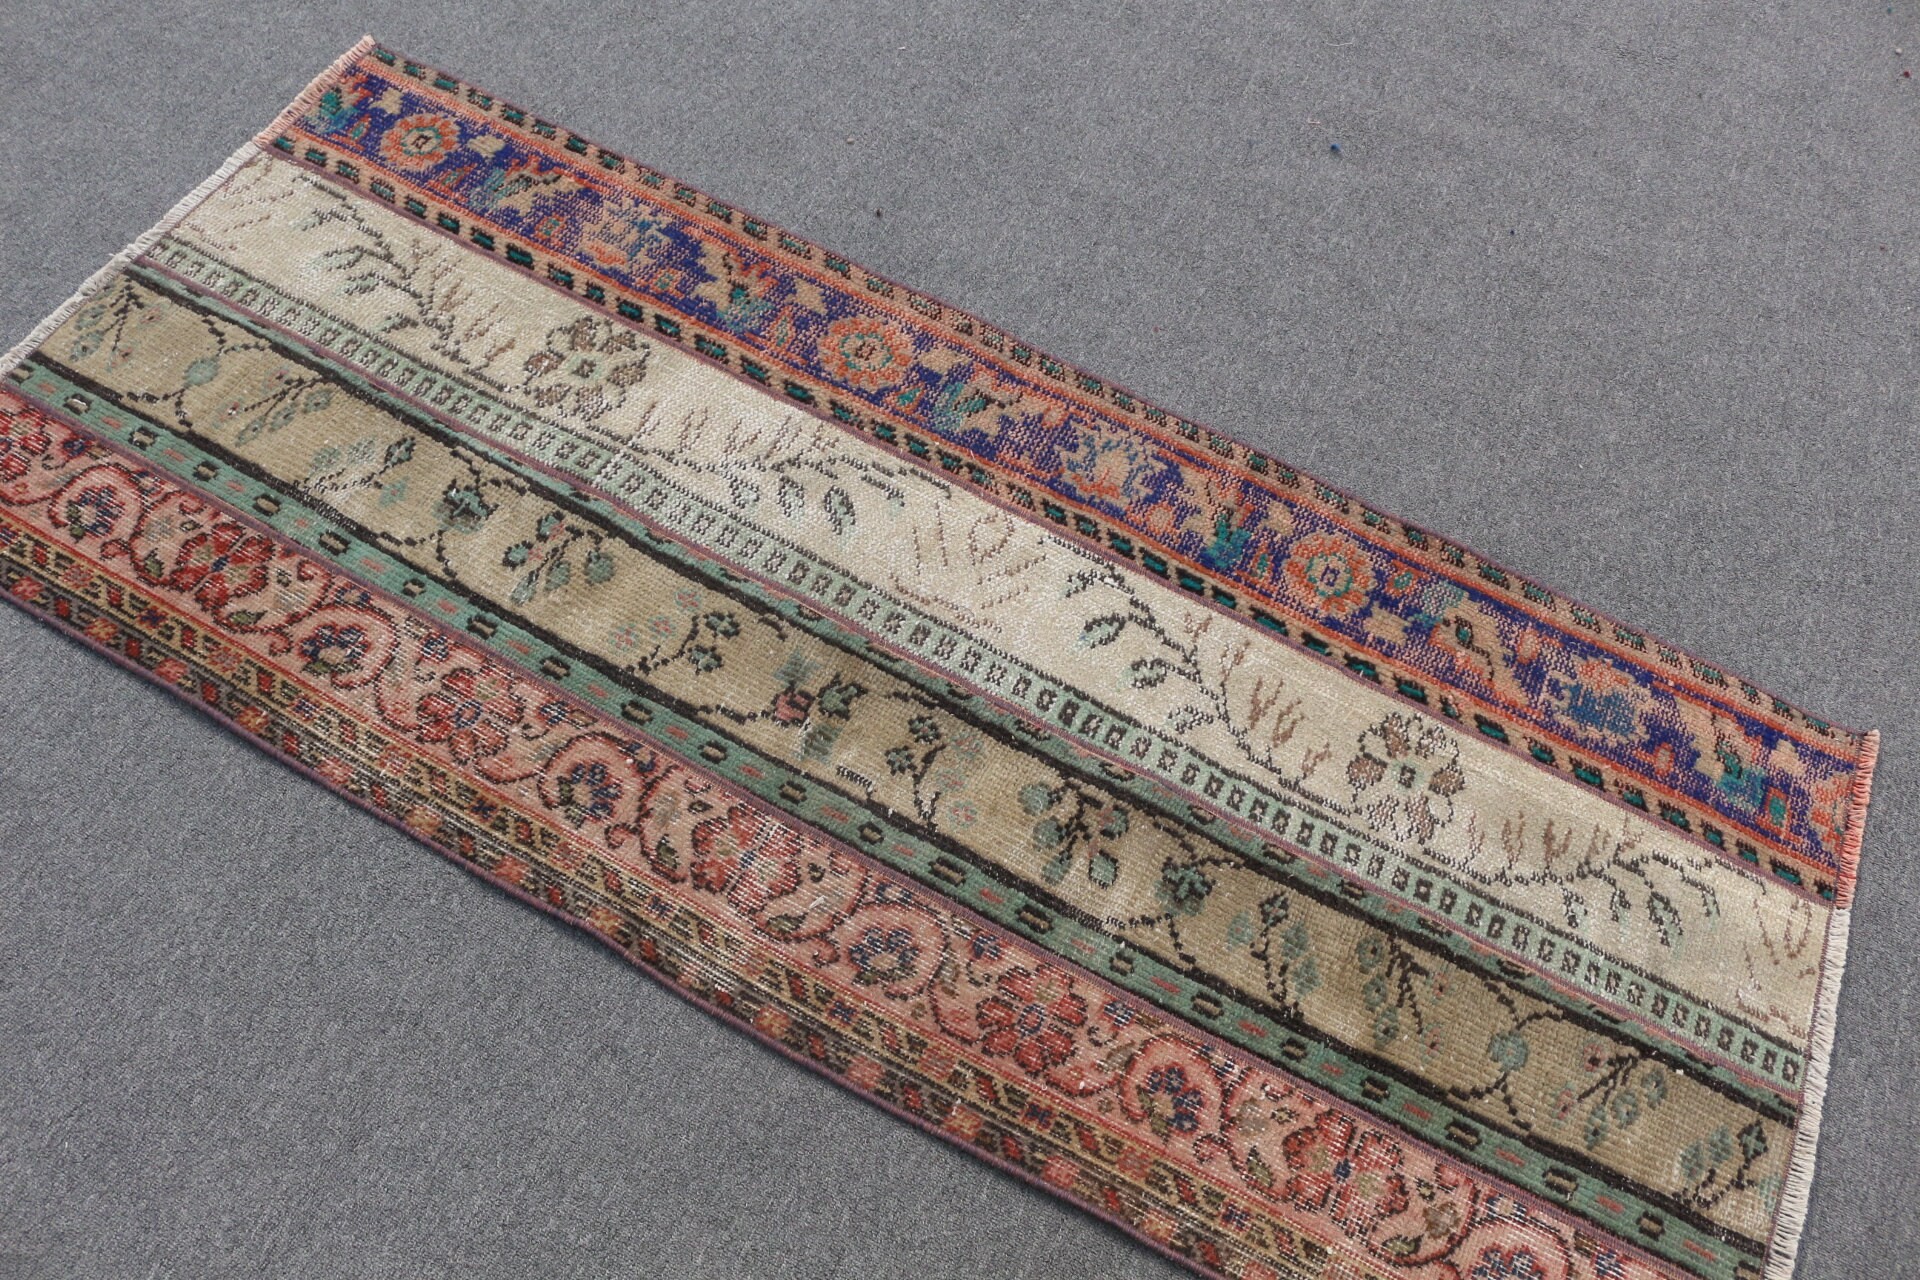 Bath Rug, Rugs for Bedroom, Turkish Rugs, Vintage Rugs, Entry Rug, 2.5x5.6 ft Small Rugs, Wool Rugs, Beige Antique Rug